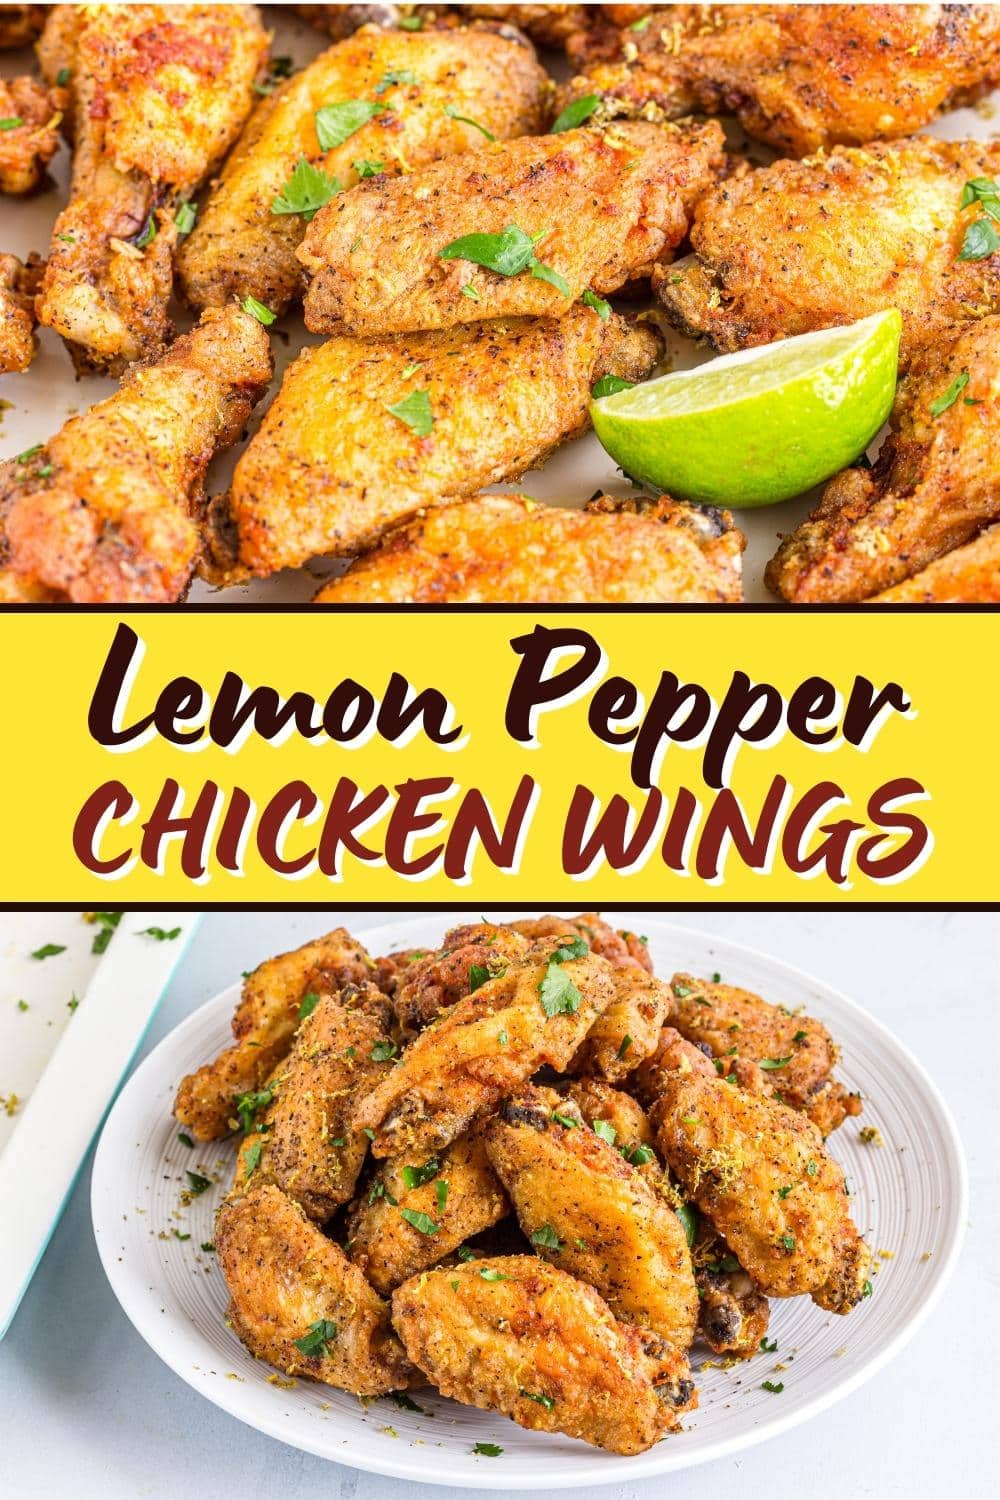 Easy Lemon Pepper Chicken Wings Recipe - Insanely Good